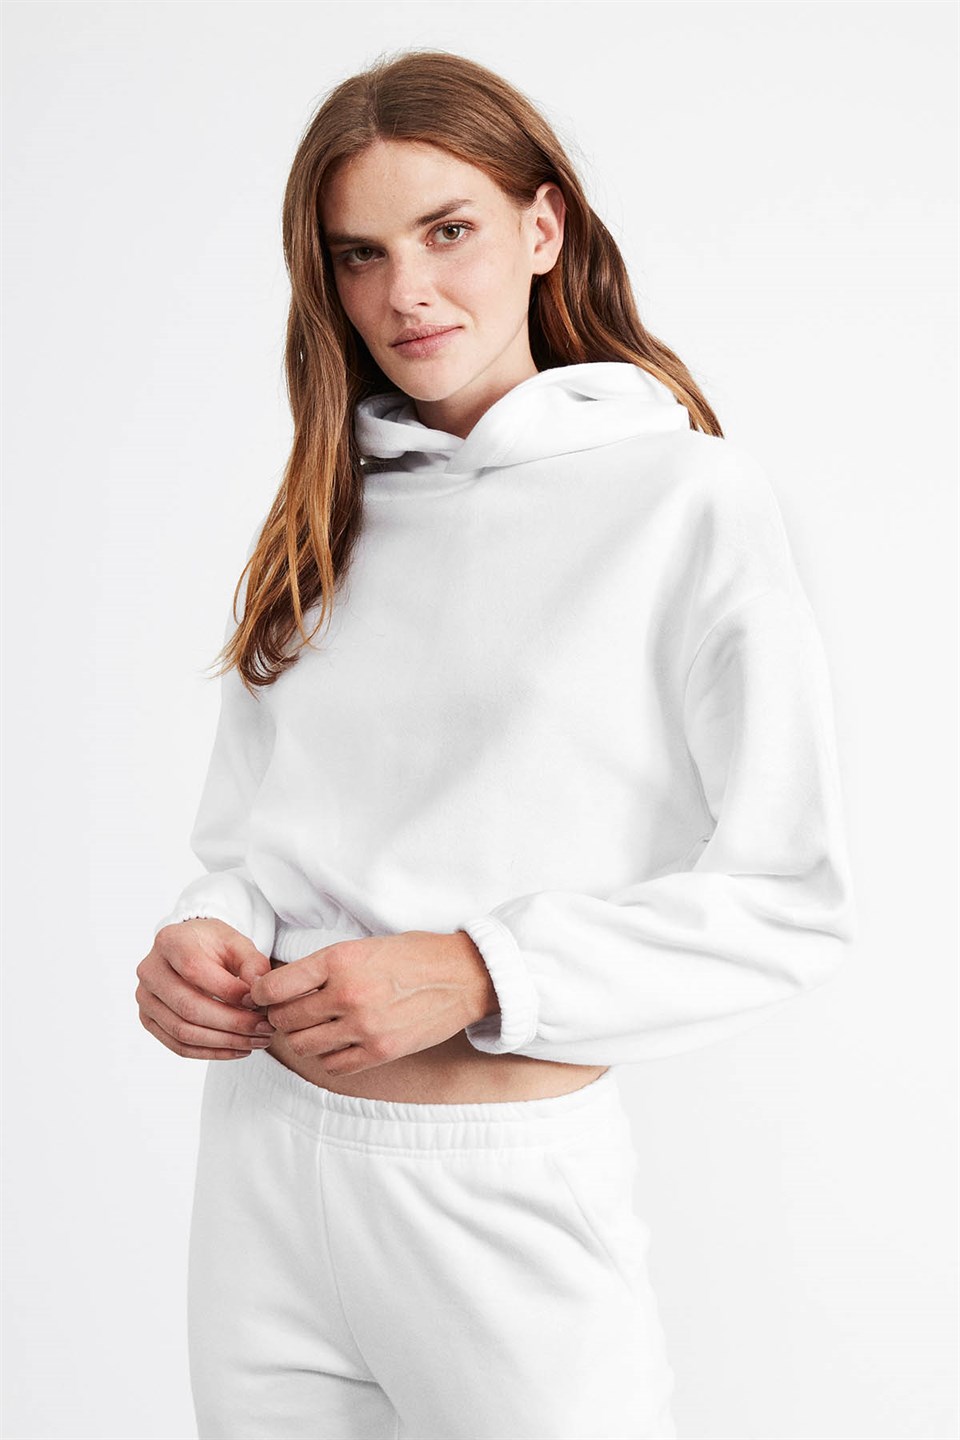 SOFIA Kadın Beyaz Düz Renk Kapüşonlu Comfort Fit Eşofman Takımı